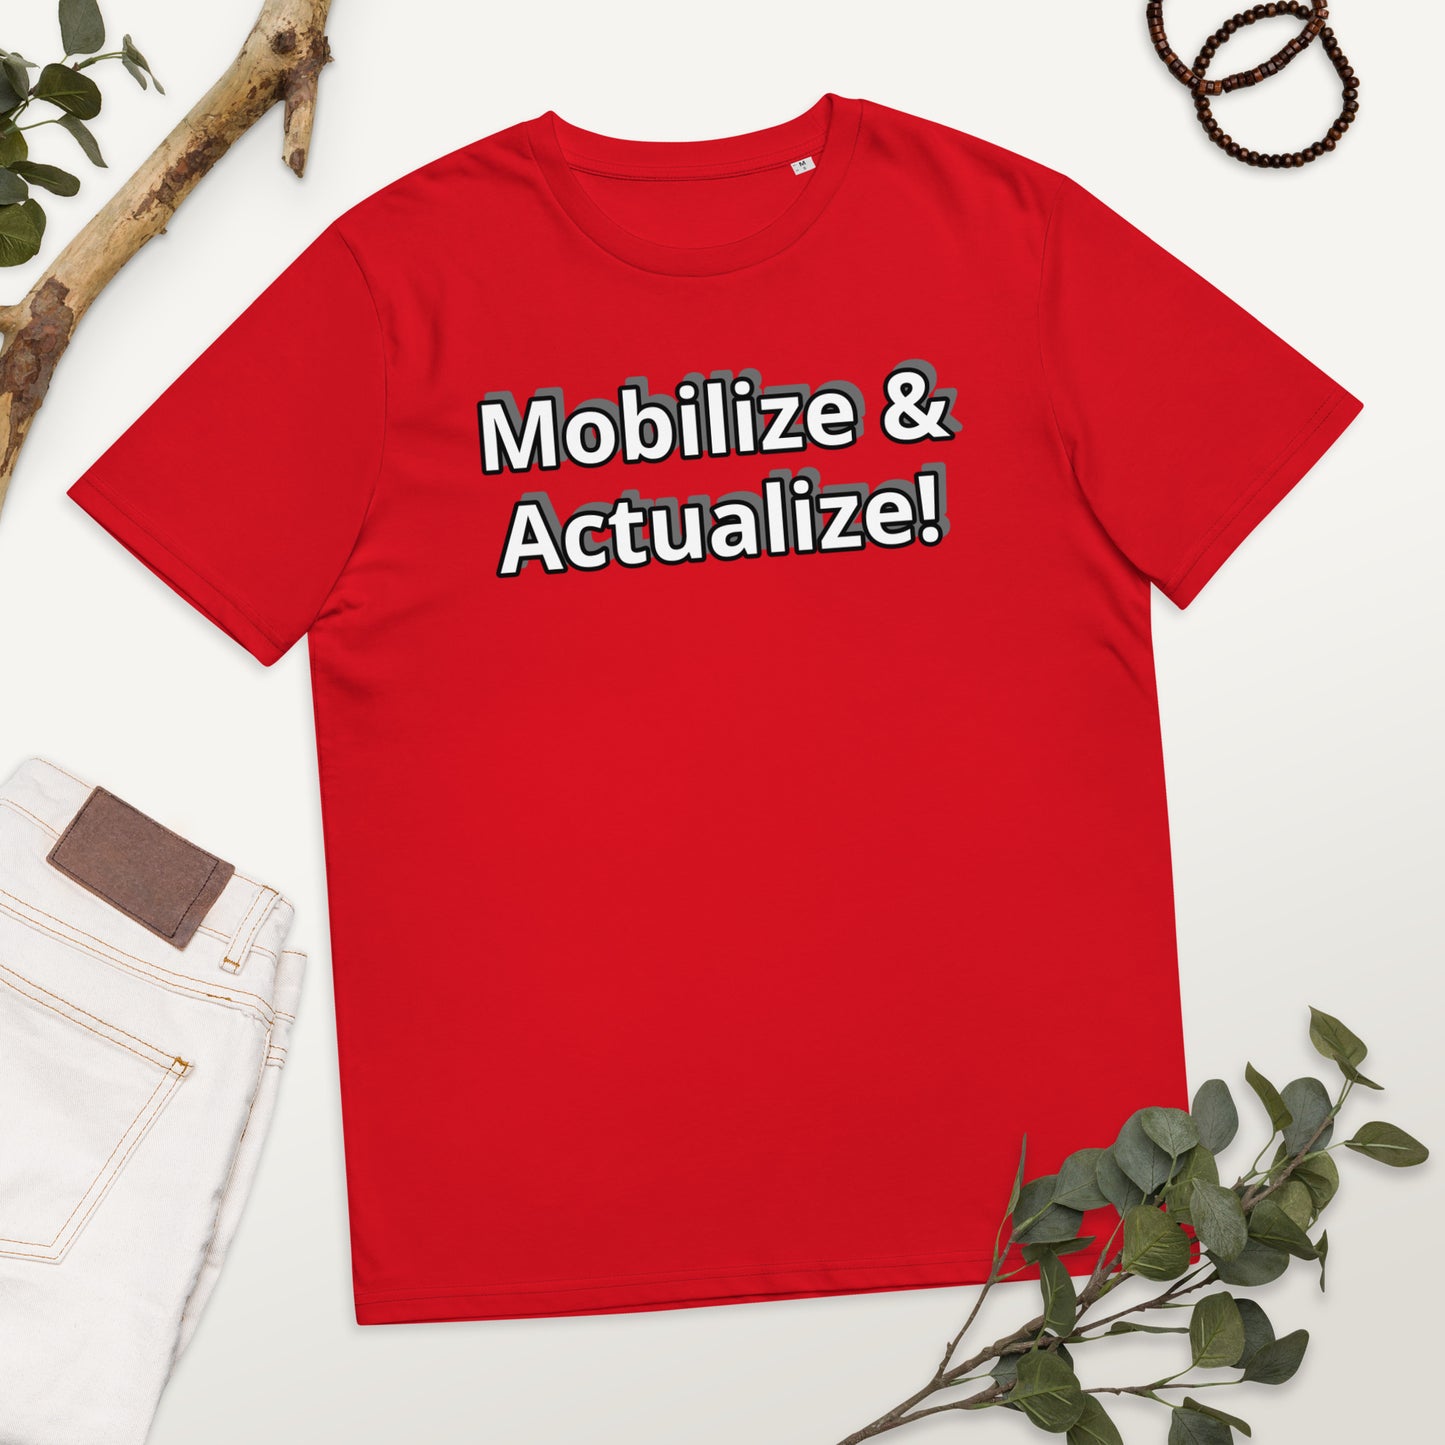 Mobilize & Actualize!  Unisex organic cotton t-shirt